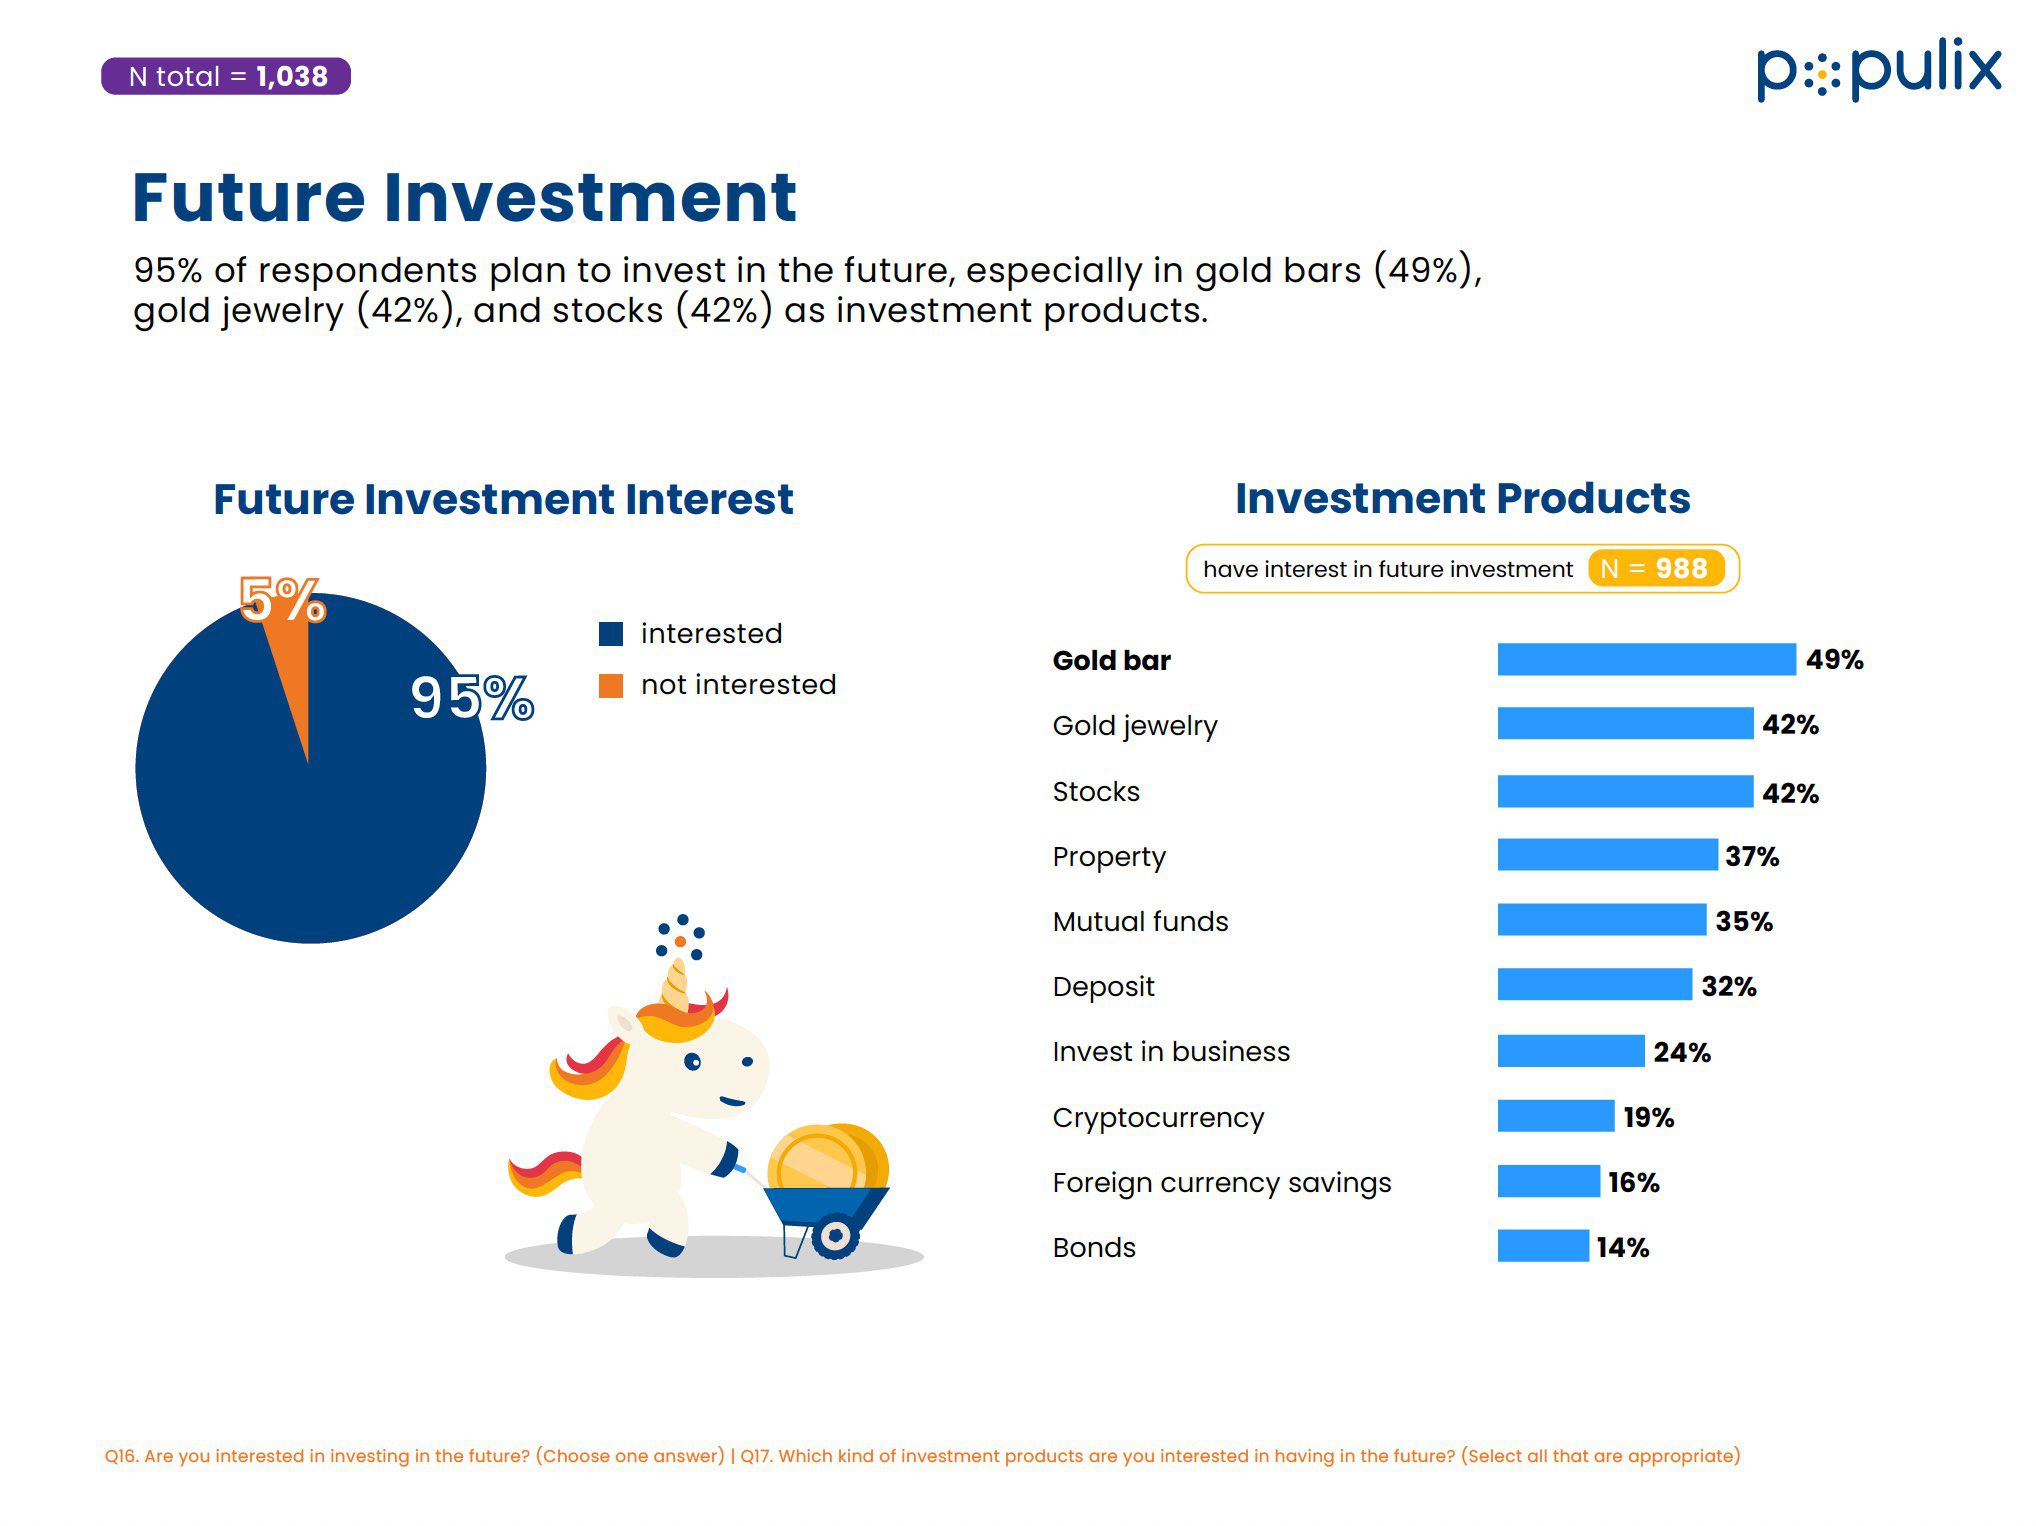 Survei Populix tentang Investasi di Masyarakat